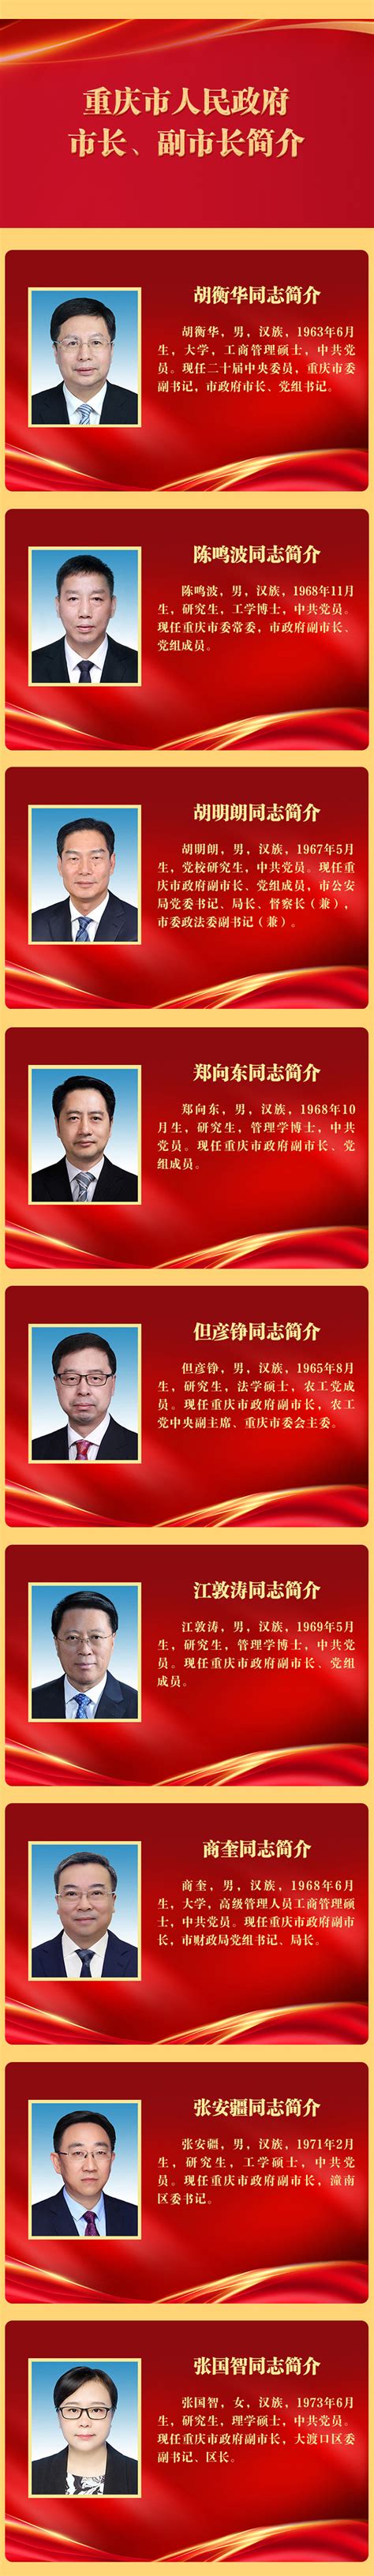 重庆市政府印发关于《重庆市进一步支持市场主体发展推动经济企稳恢复提振的政策措施》 - 重庆房地产市场信息系统